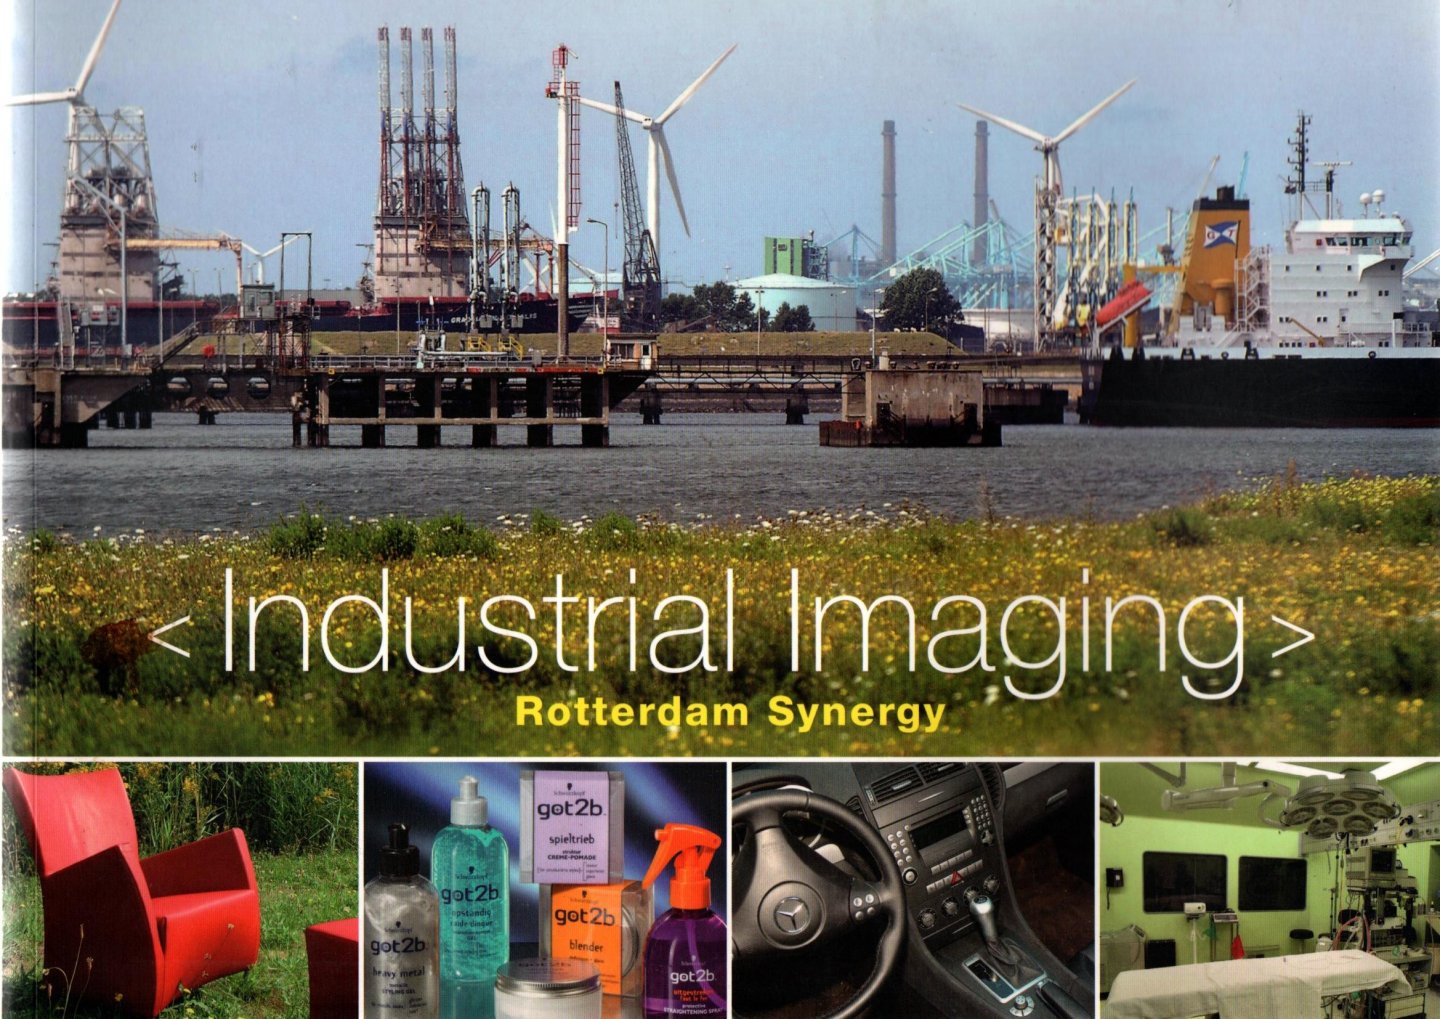 Hillen, J.D. - Industrial Imaging Rotterdam